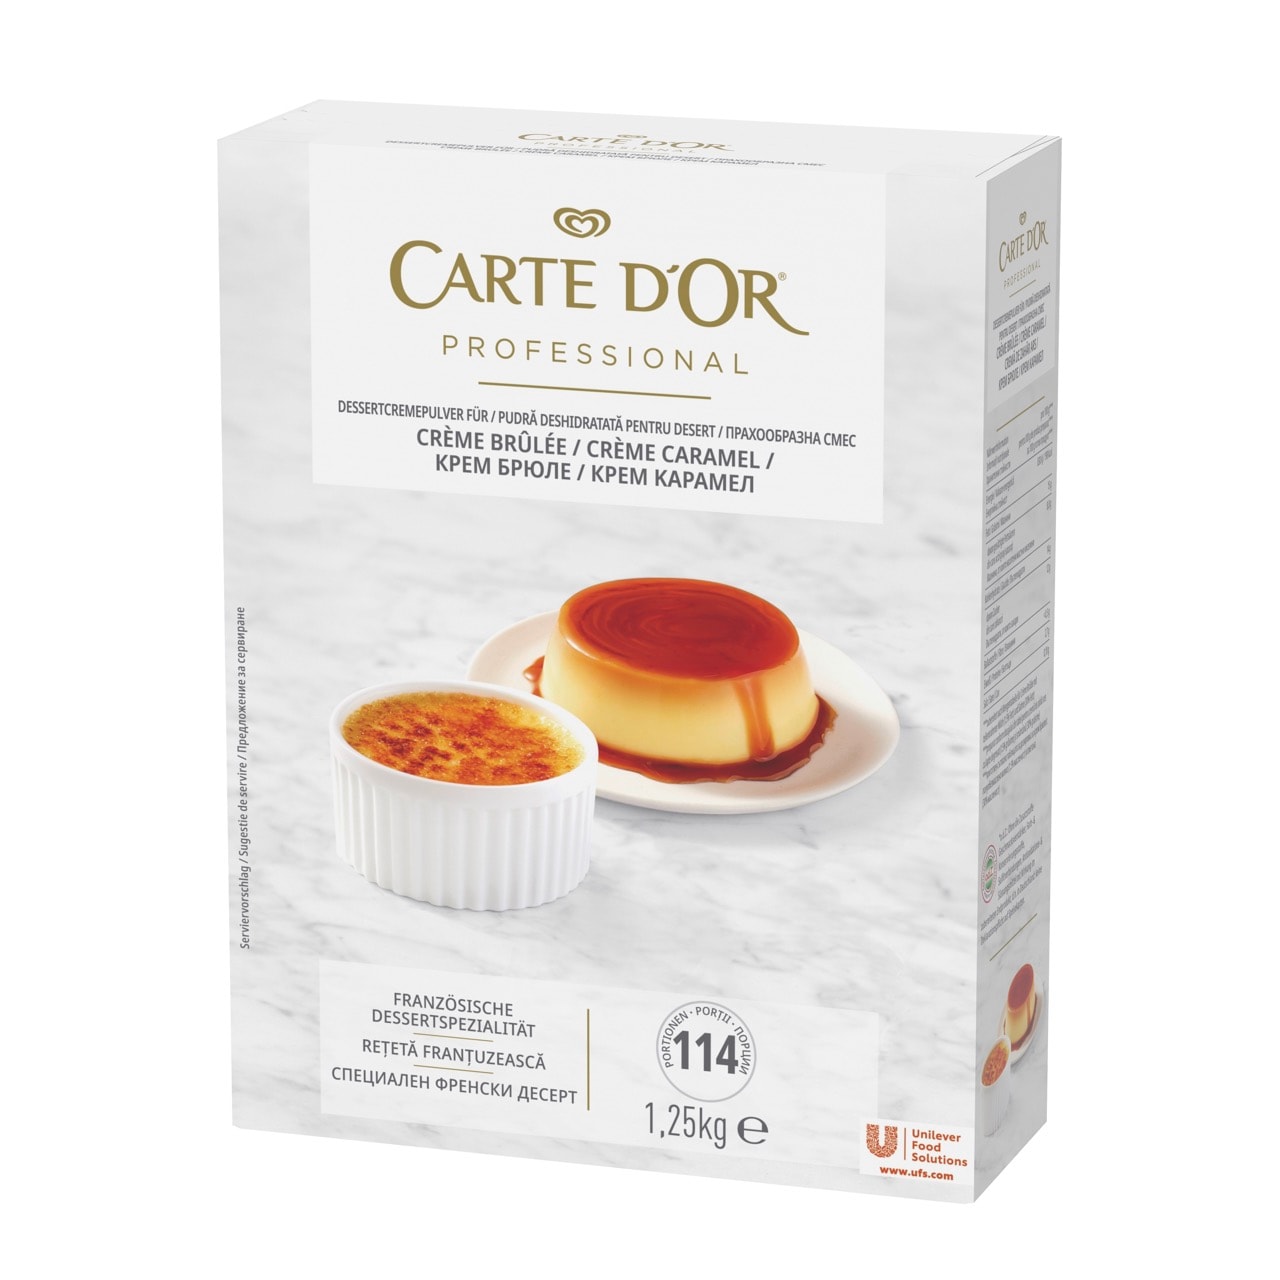 Carte D'Or Crema Caramel - 